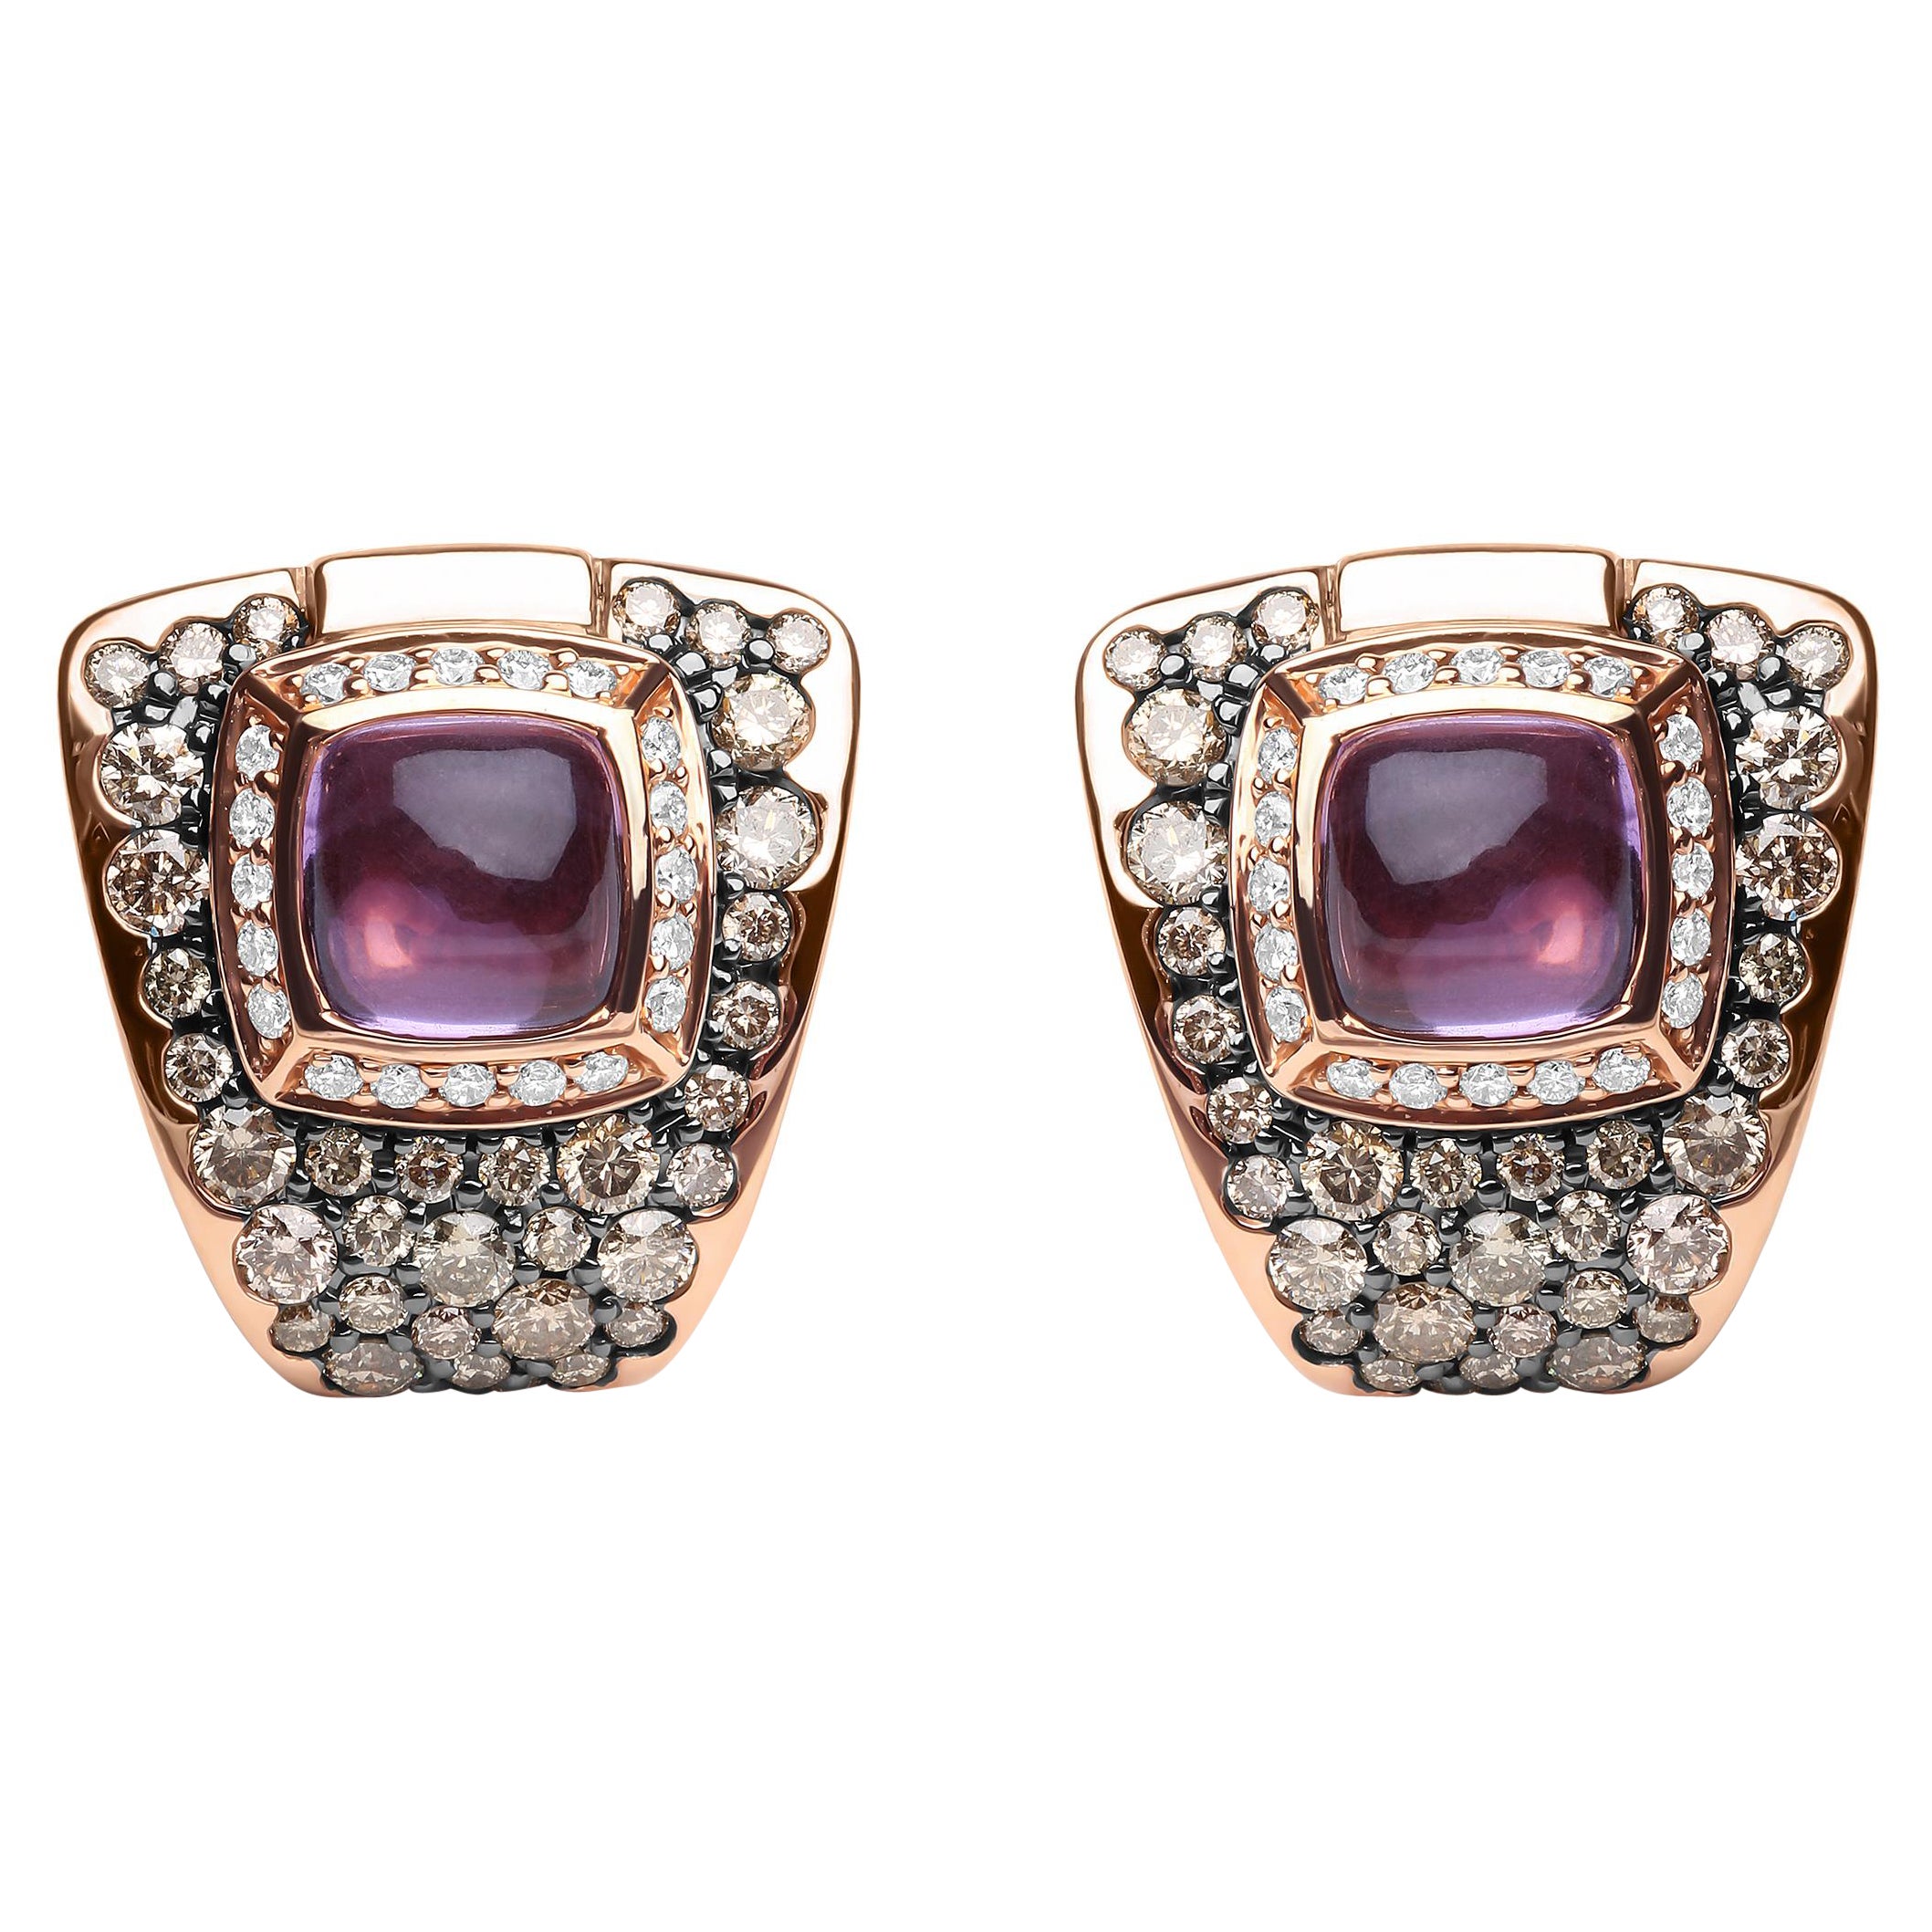 Clous d'oreilles en or rose 18 carats avec diamants de 1/2 carat et améthyste violette